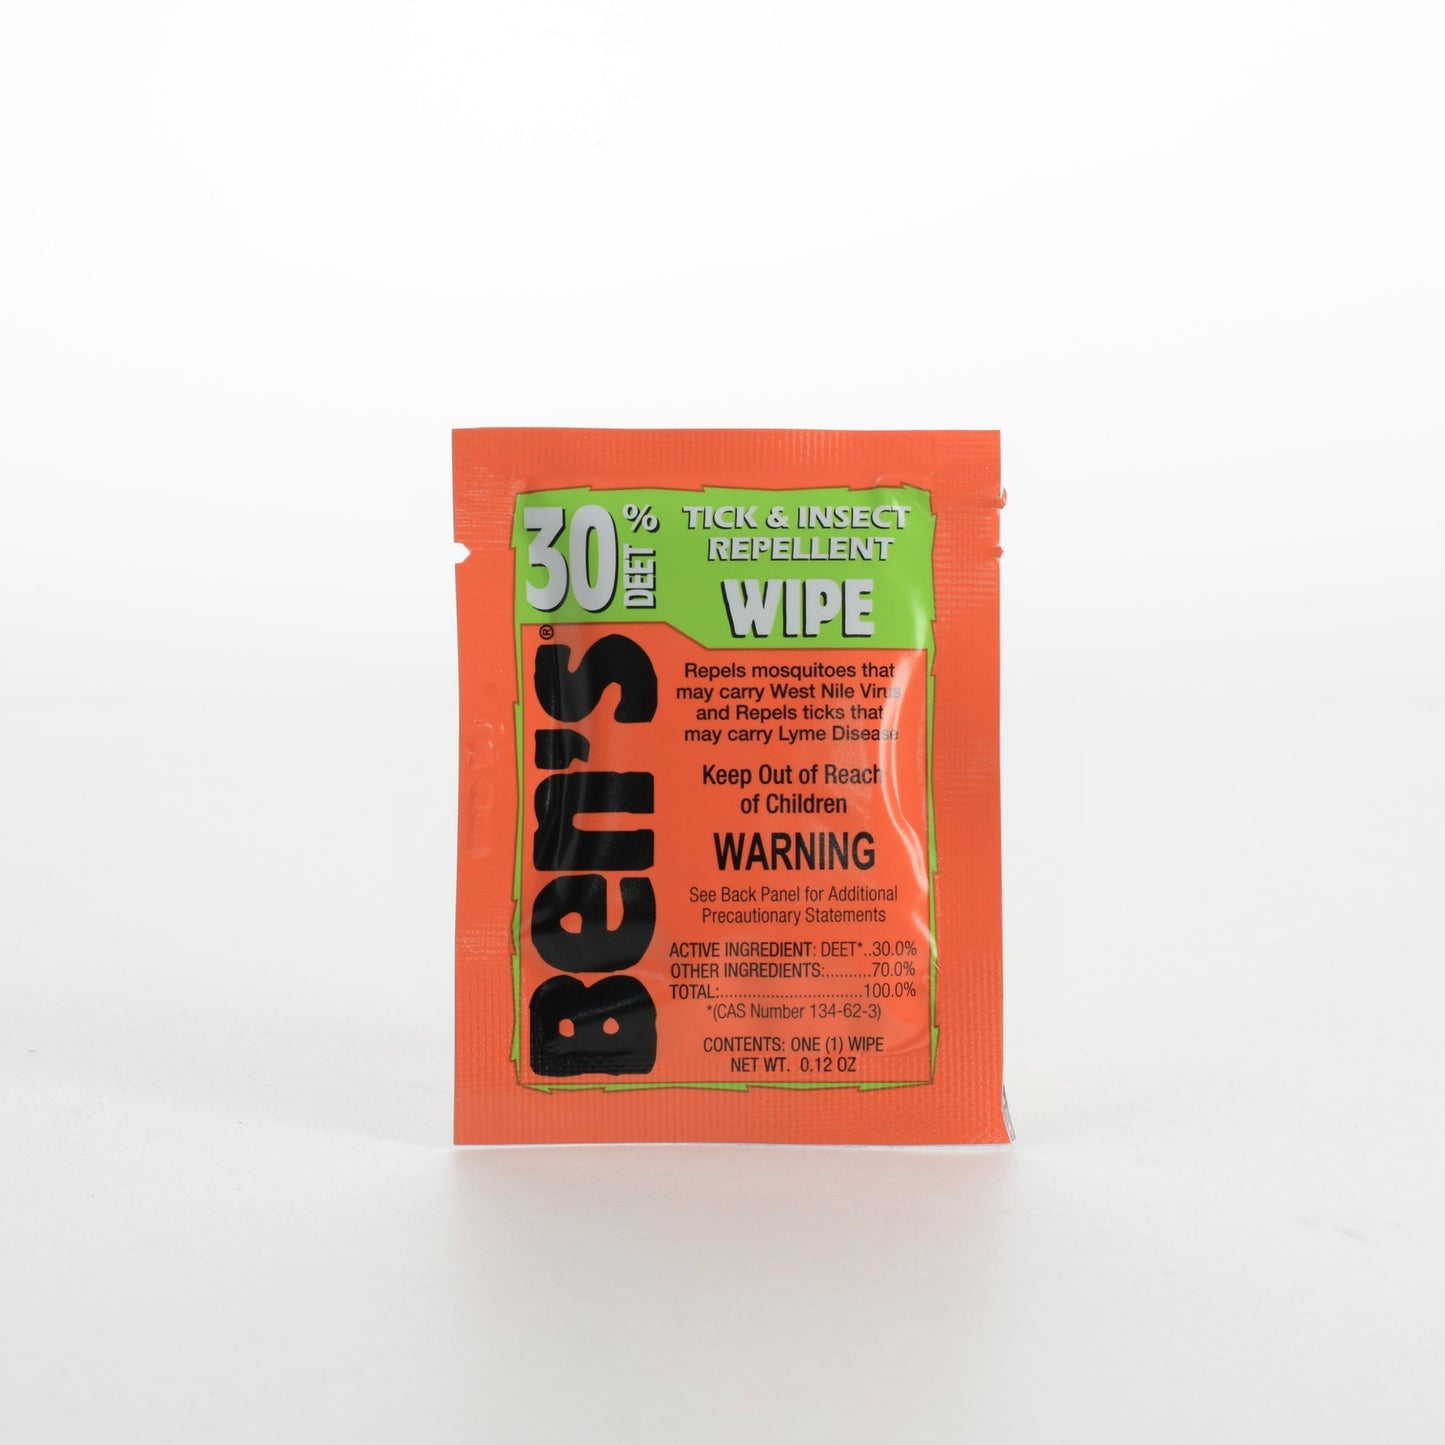 Bens Deet 30 Tick & Insect Repellent Wipes - Single pack of 0ne